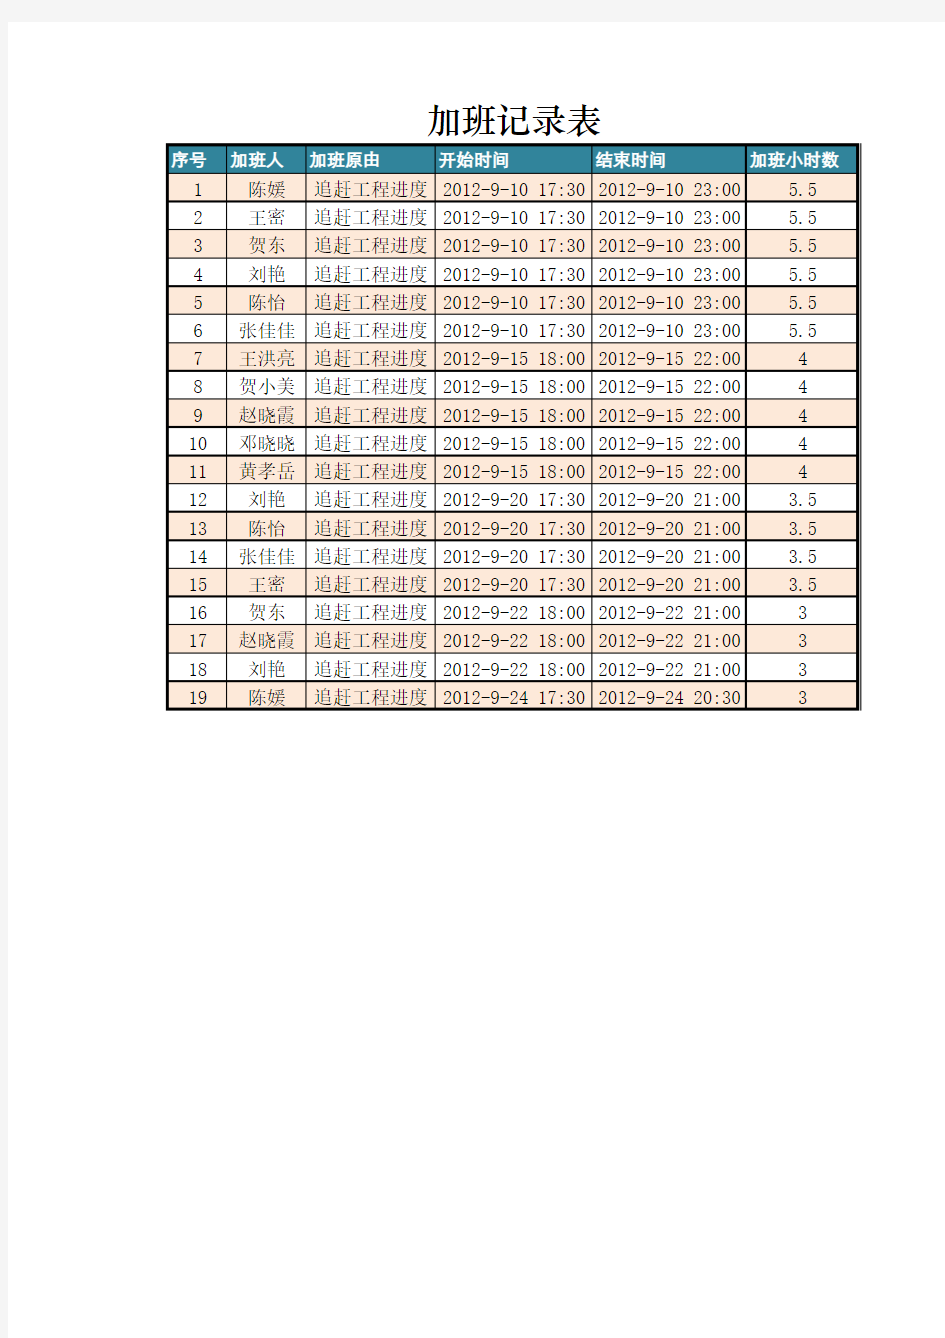 加班记录表及加班费用计算Excel表格模板